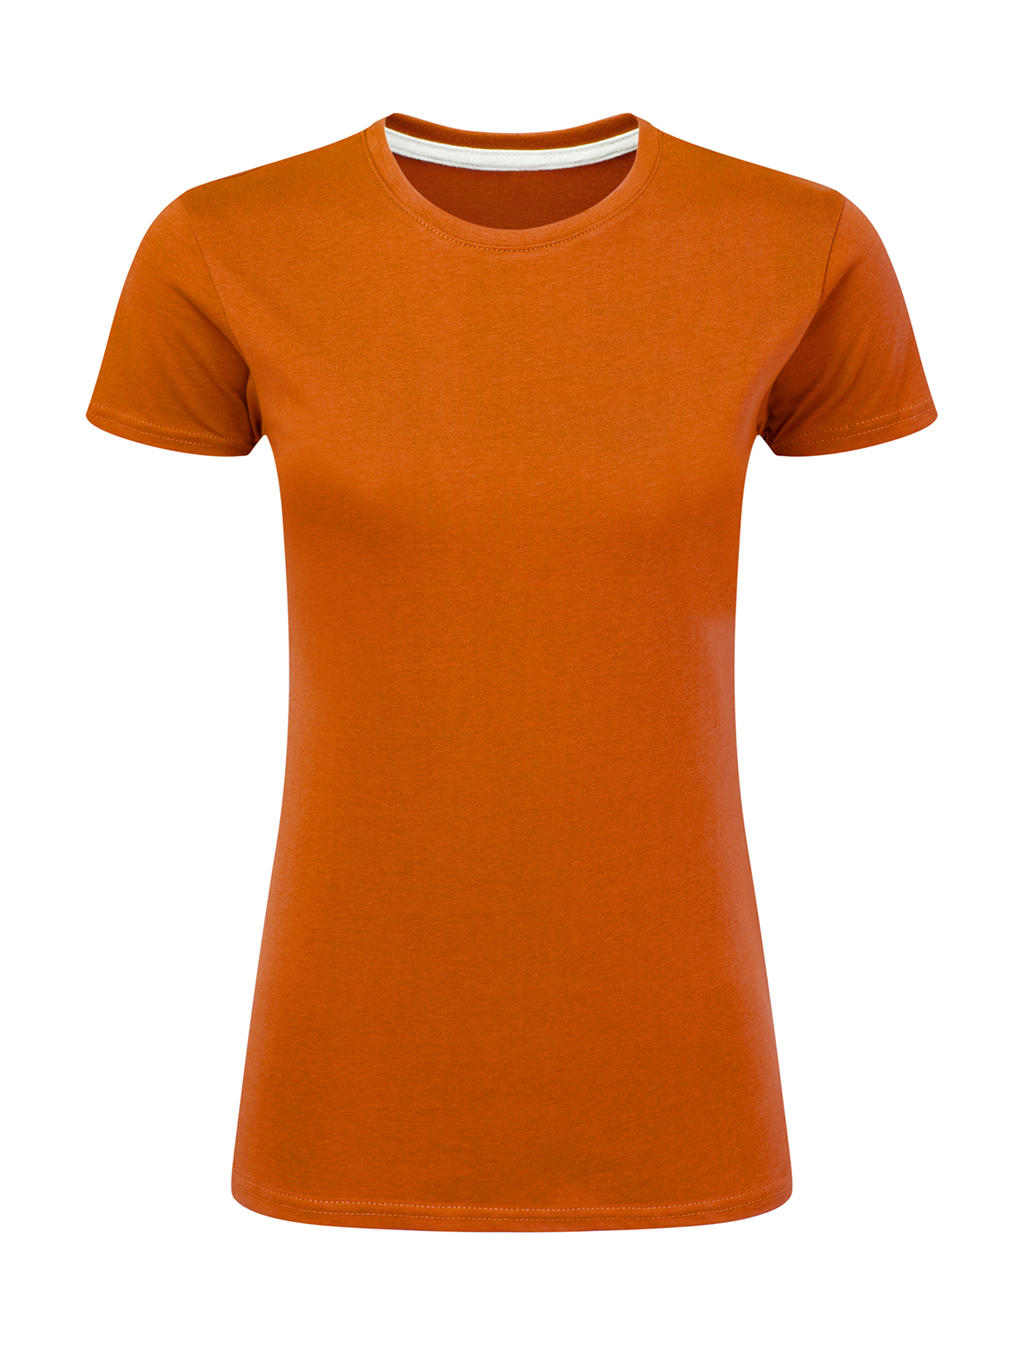 Dokonale potlačiteľné dámske tričko bez štítku - orange